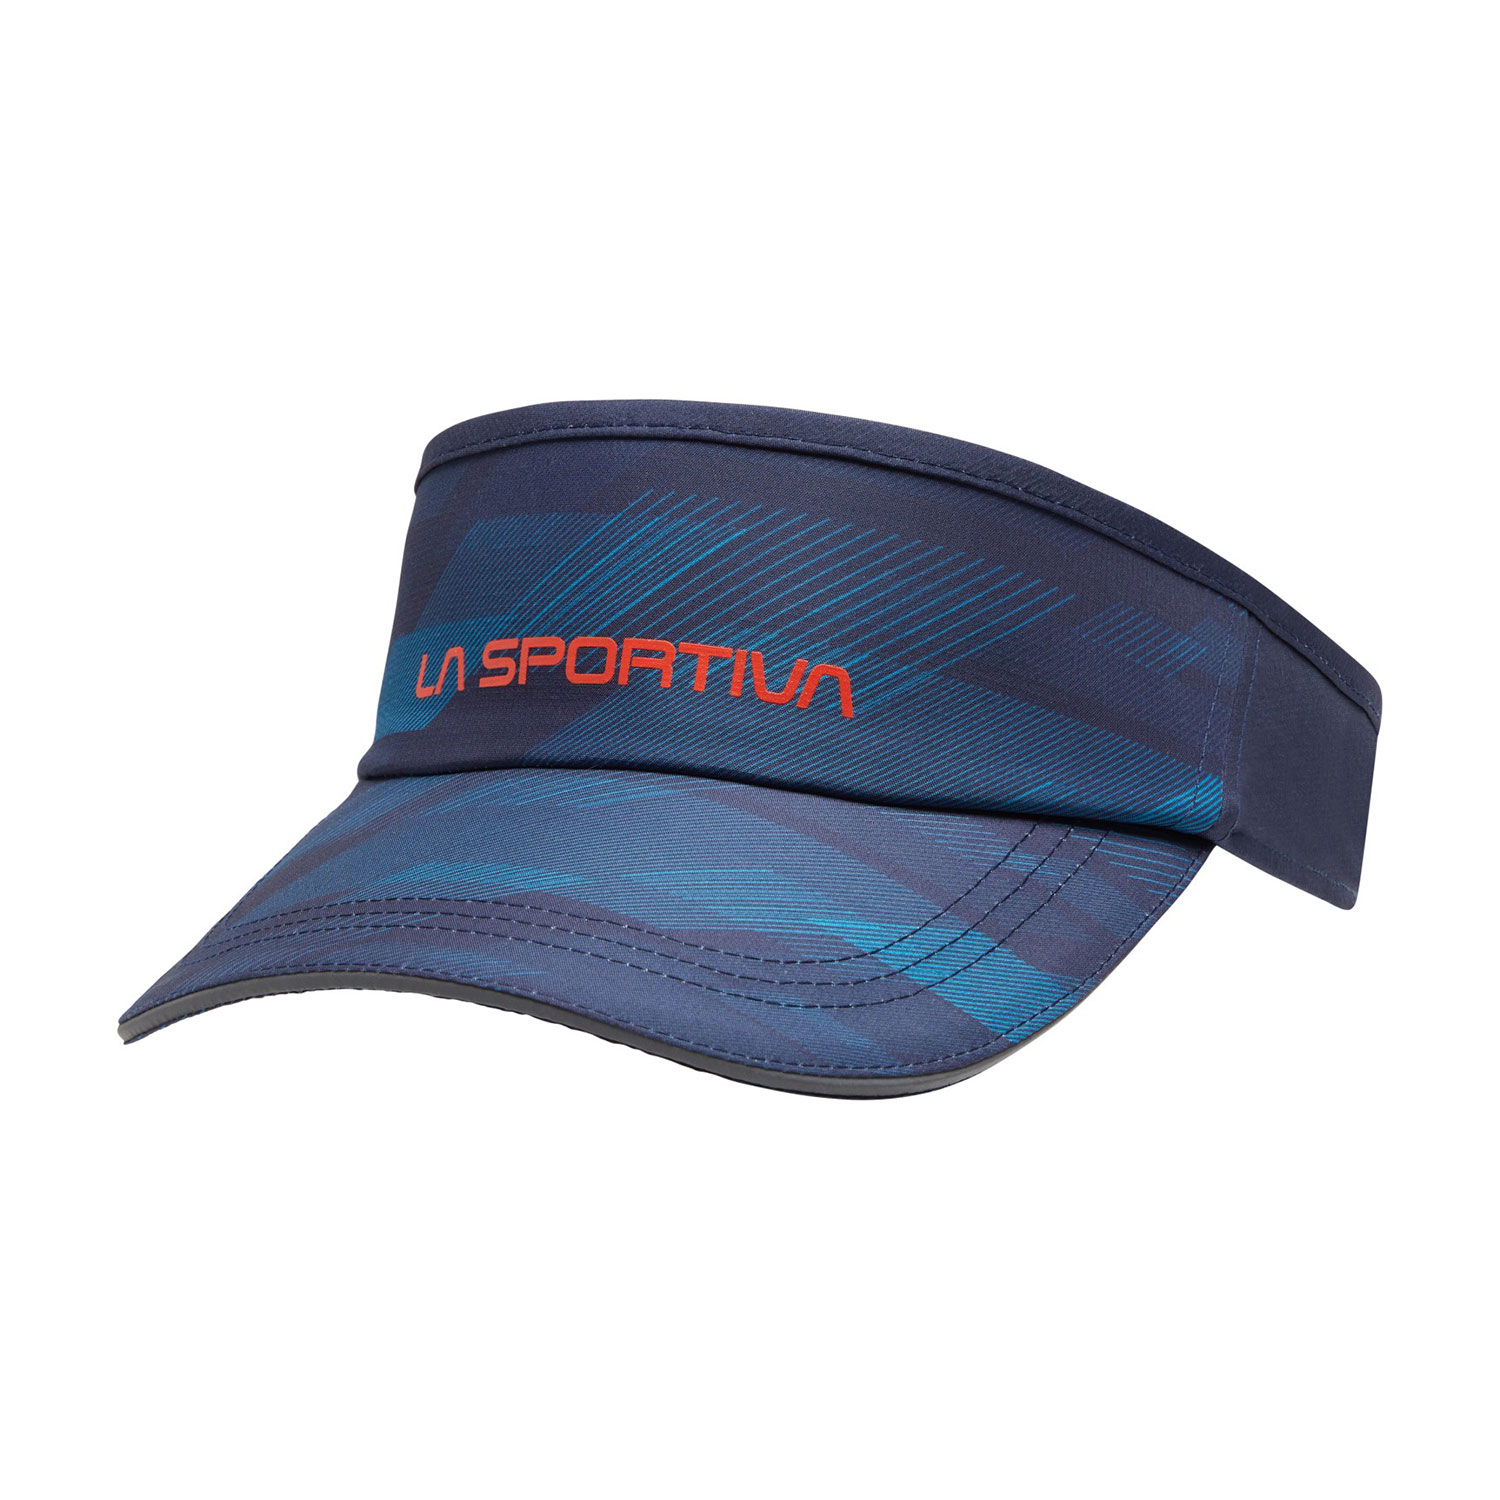 La Sportiva Skyrun Visera - Deep Sea/Tropic Blue